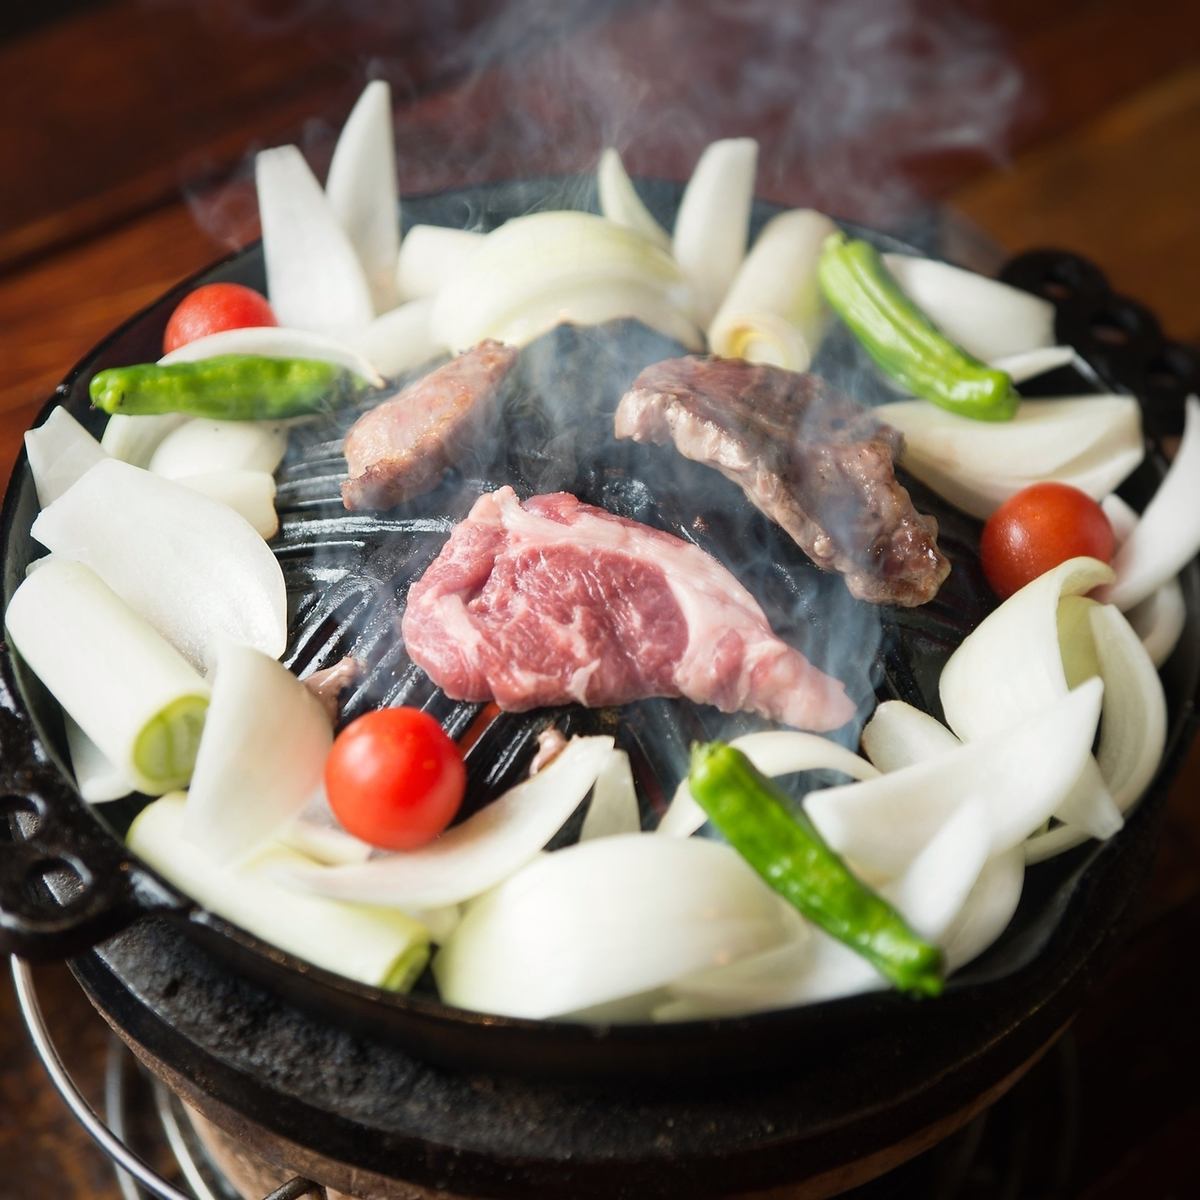 北海道直送のジンギスカン、新鮮な羊肉をお召し上がりください。